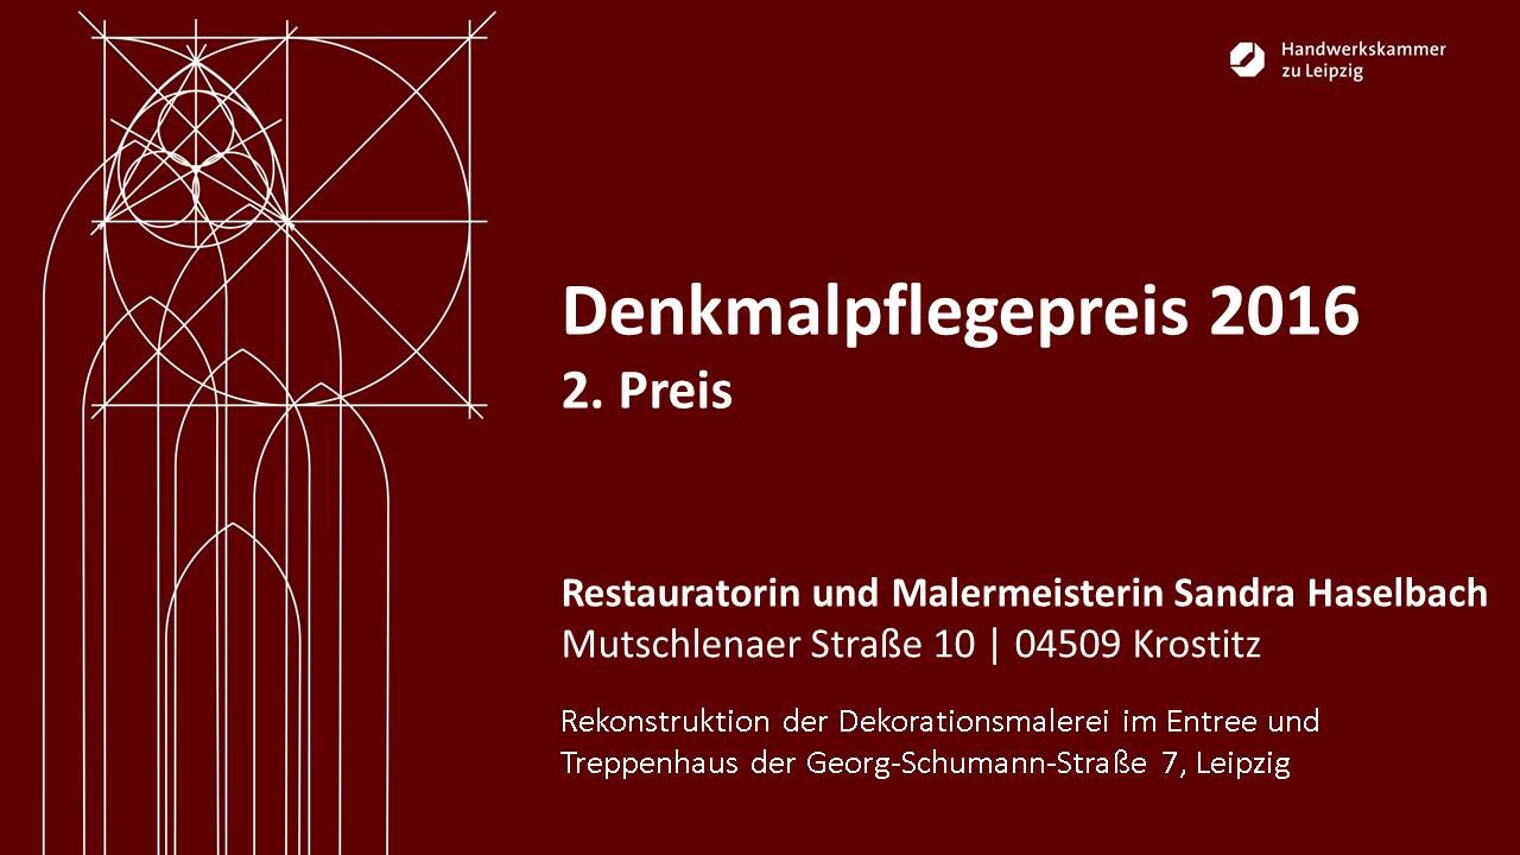 Restauratorin und Malermeisterin Sandra Haselbach: Rekonstruktion der Dekorationsmalerei im Entree und Treppenhaus der Georg-Schumann-Straße 7, Leipzig.